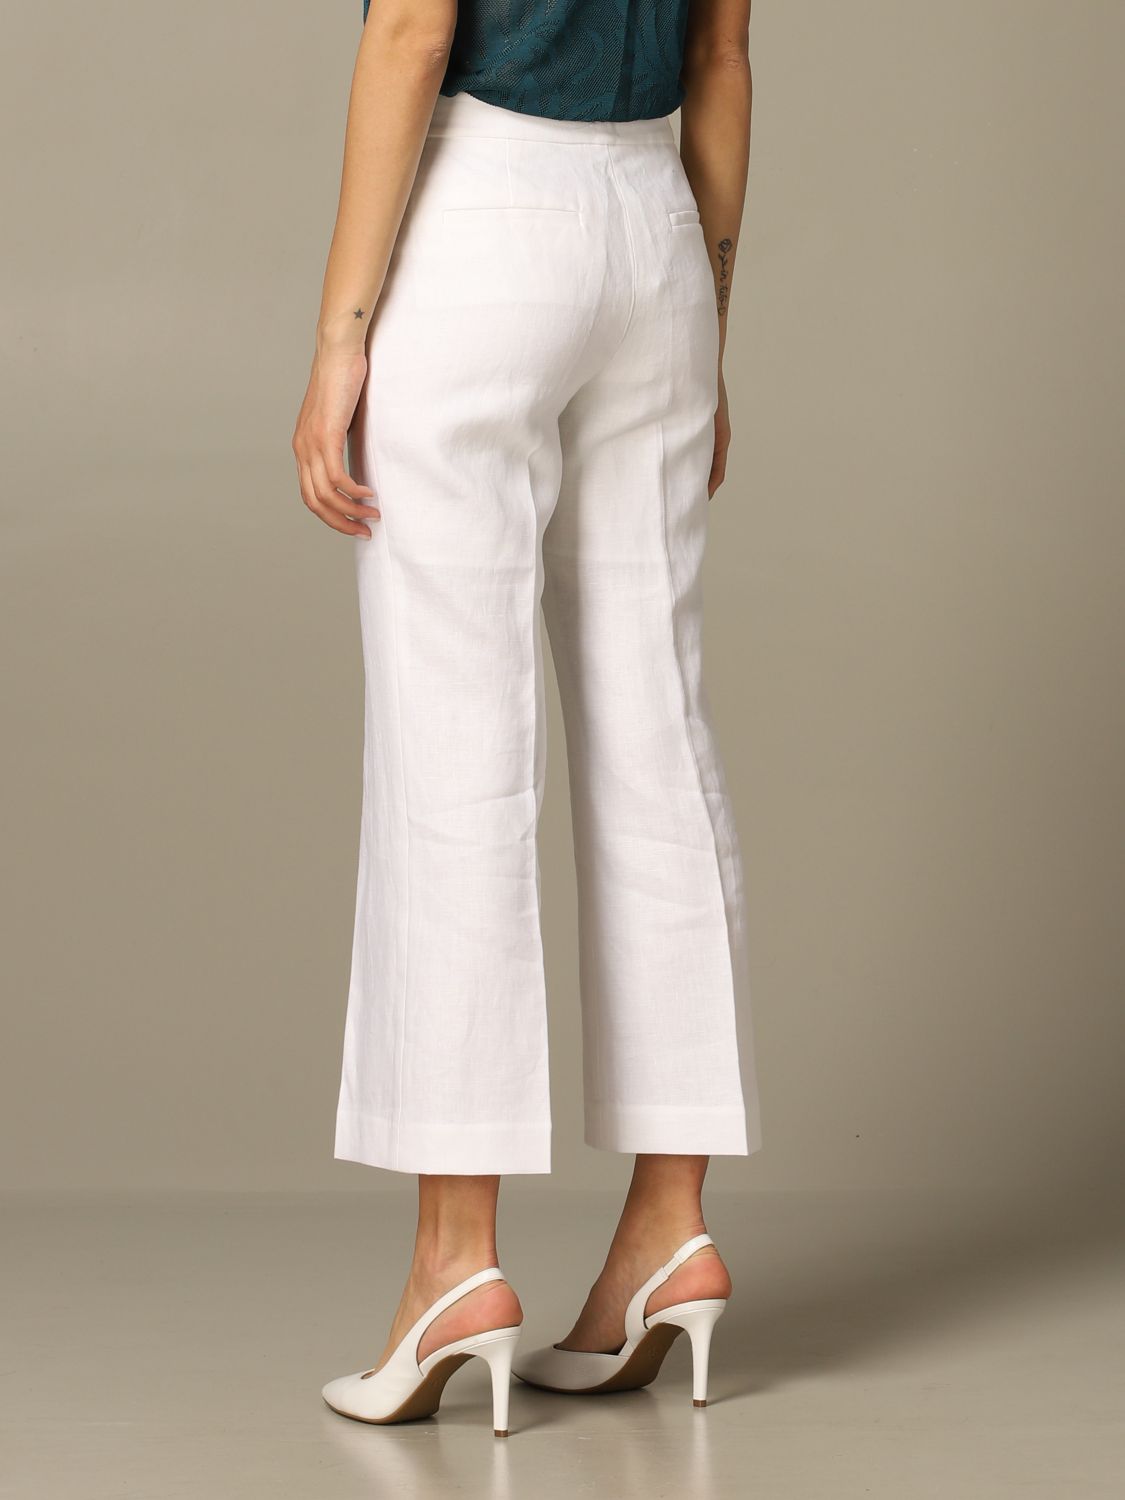 Women's linen trousers